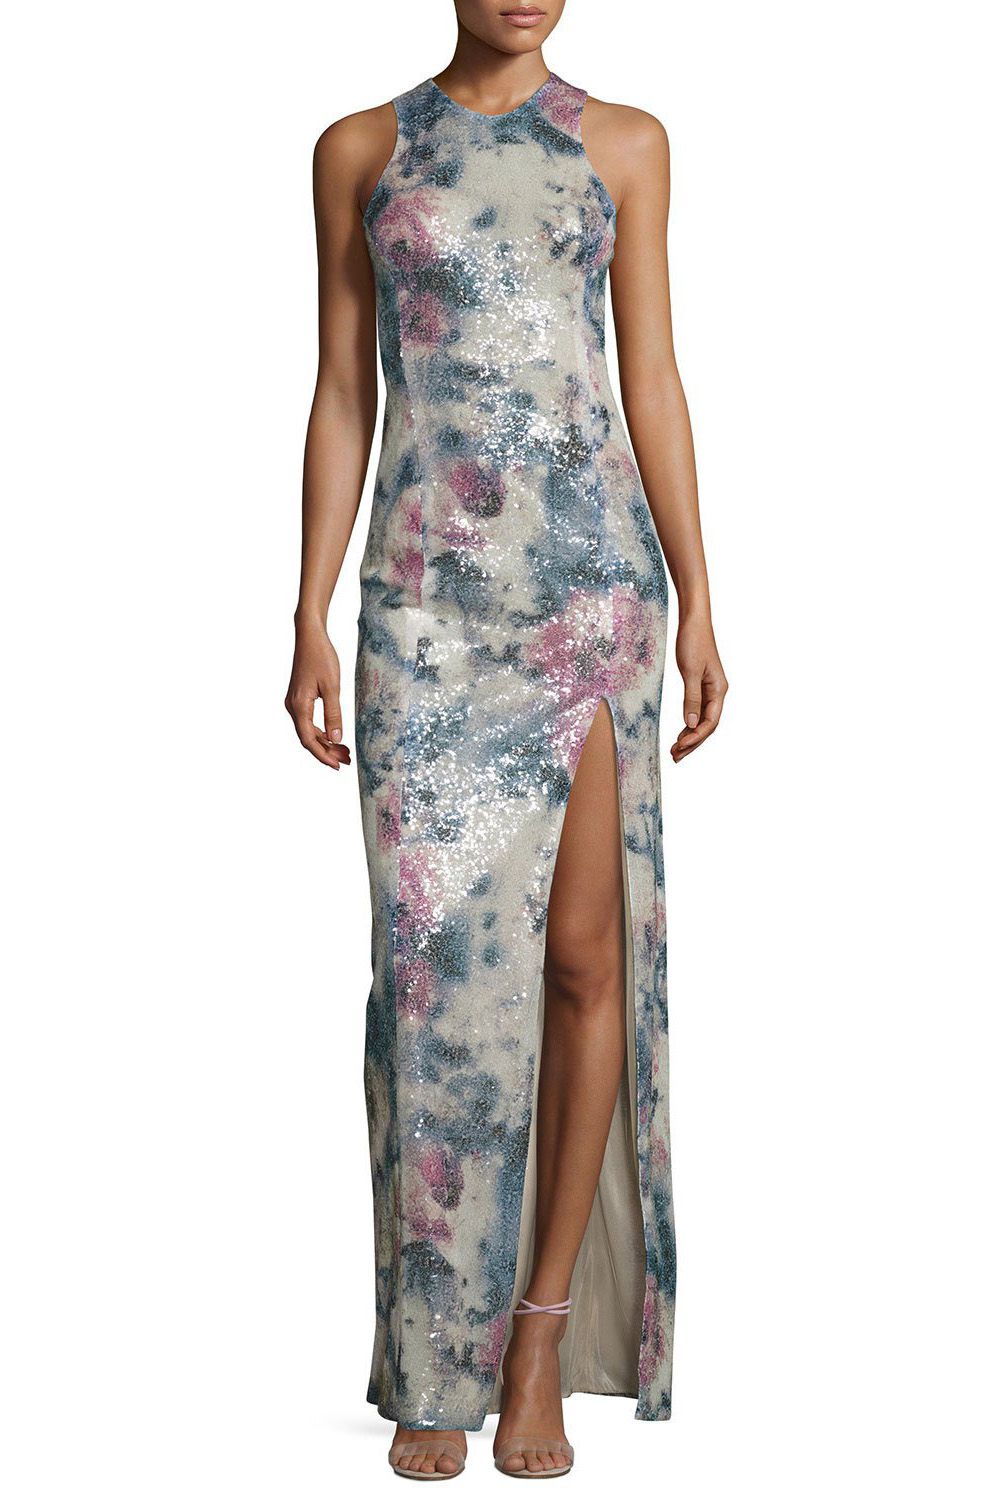 Galvan Desert Rose Sequined Sleeveless Gown, $1,455